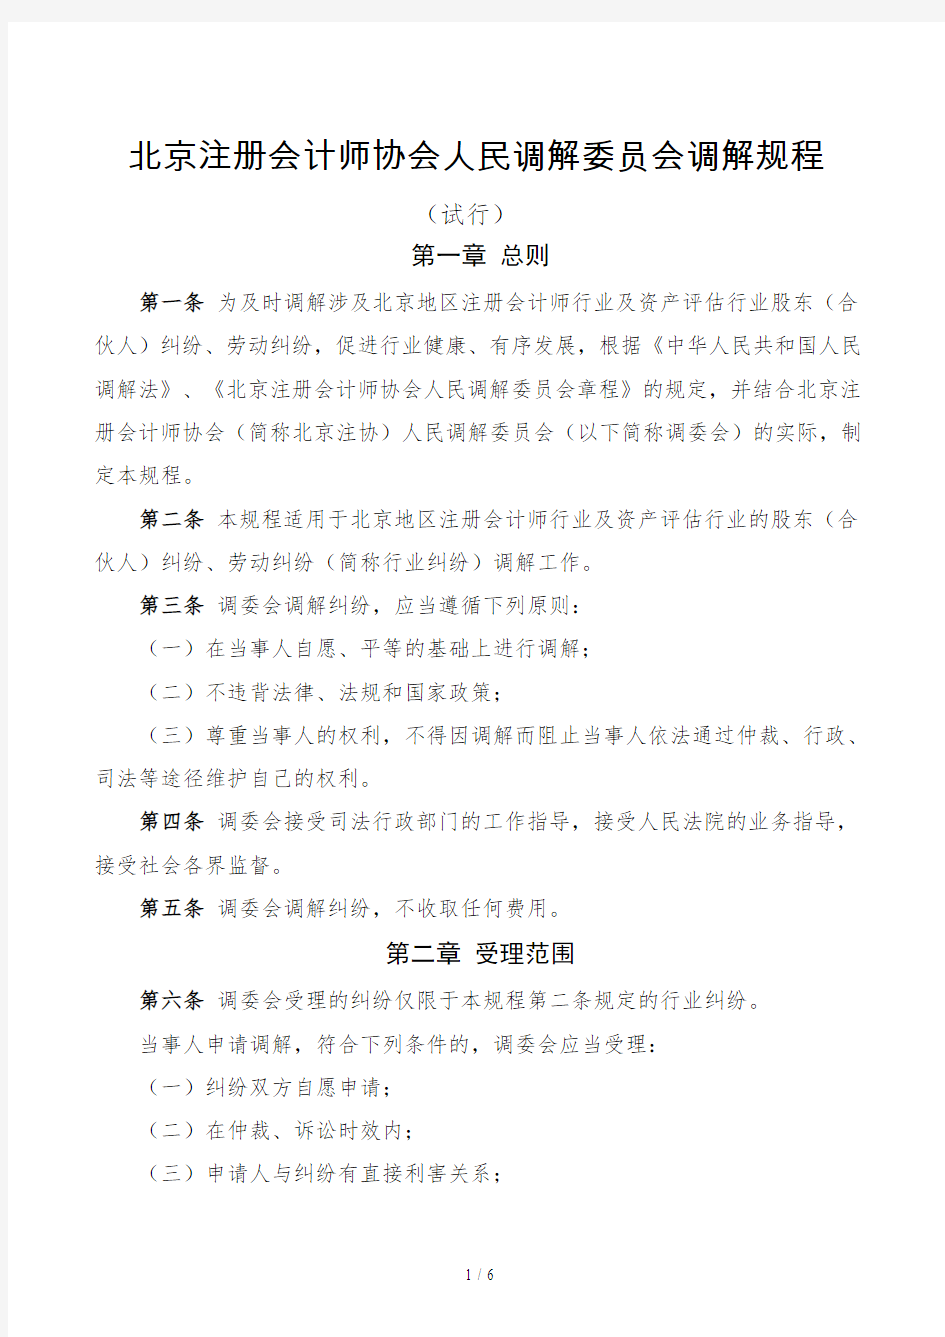 北京注册会计师协会人民调解委员会调解规程